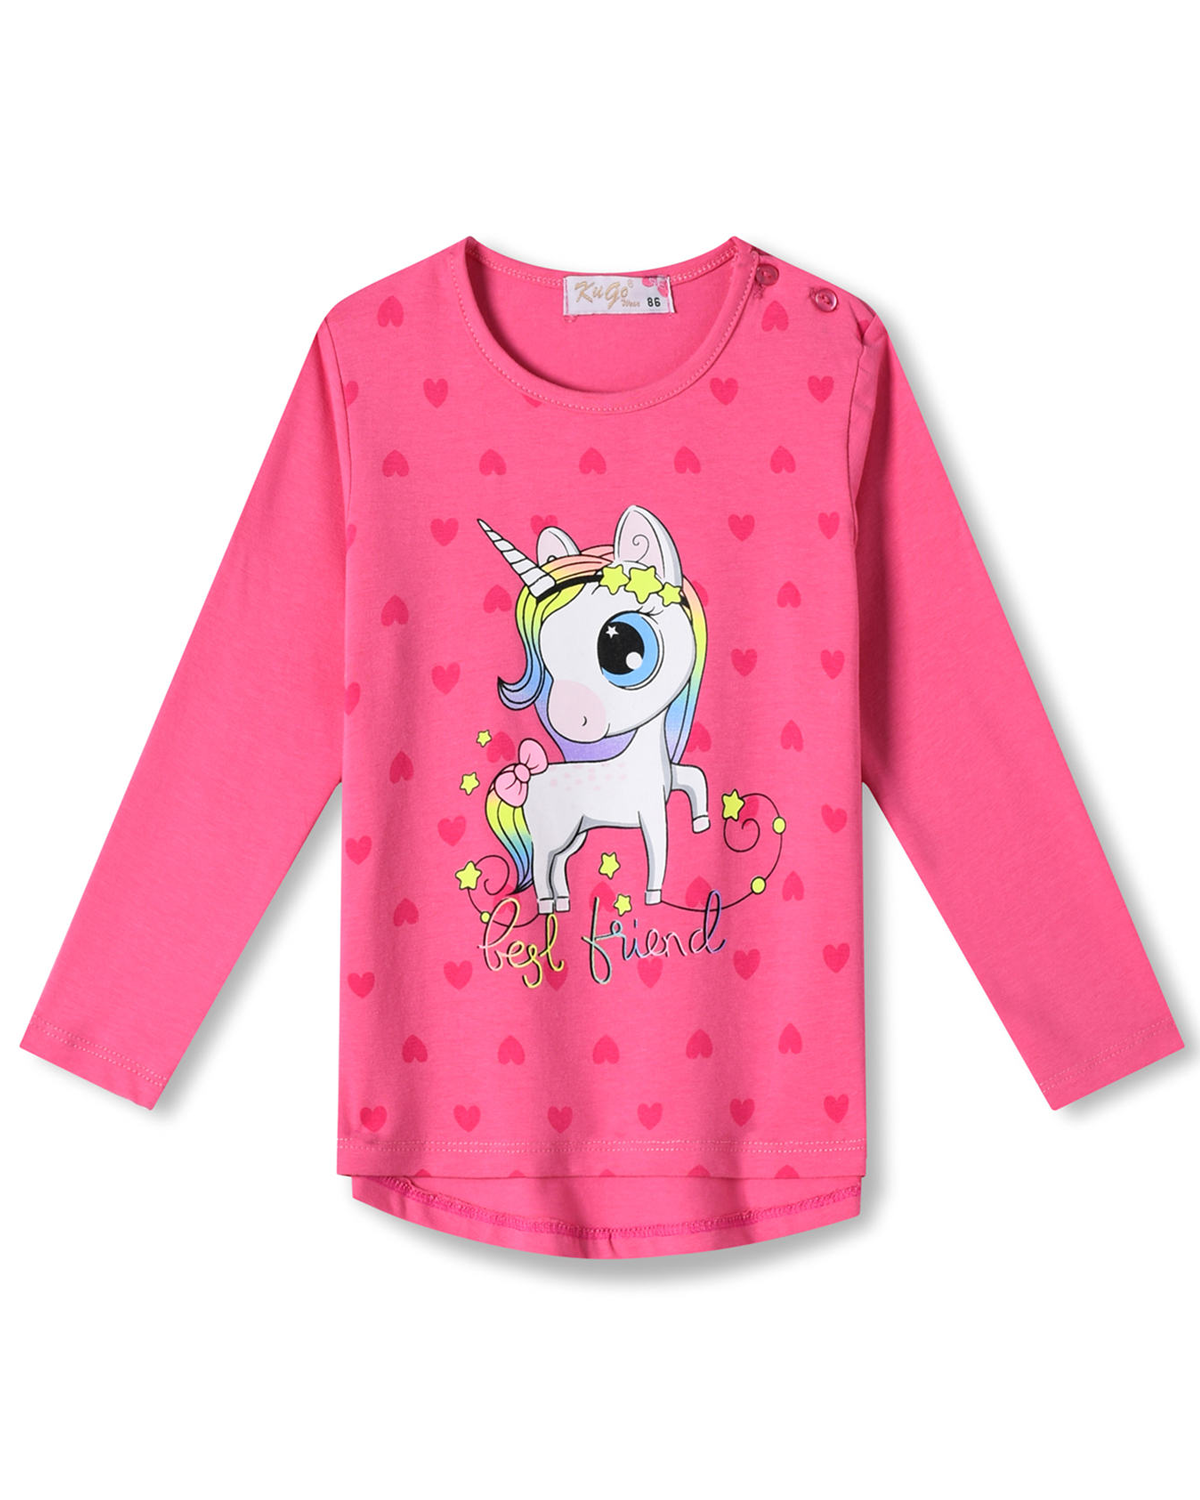 Dívčí tričko - KUGO HC0746, sytě růžová Barva: Růžová tmavší, Velikost: 110